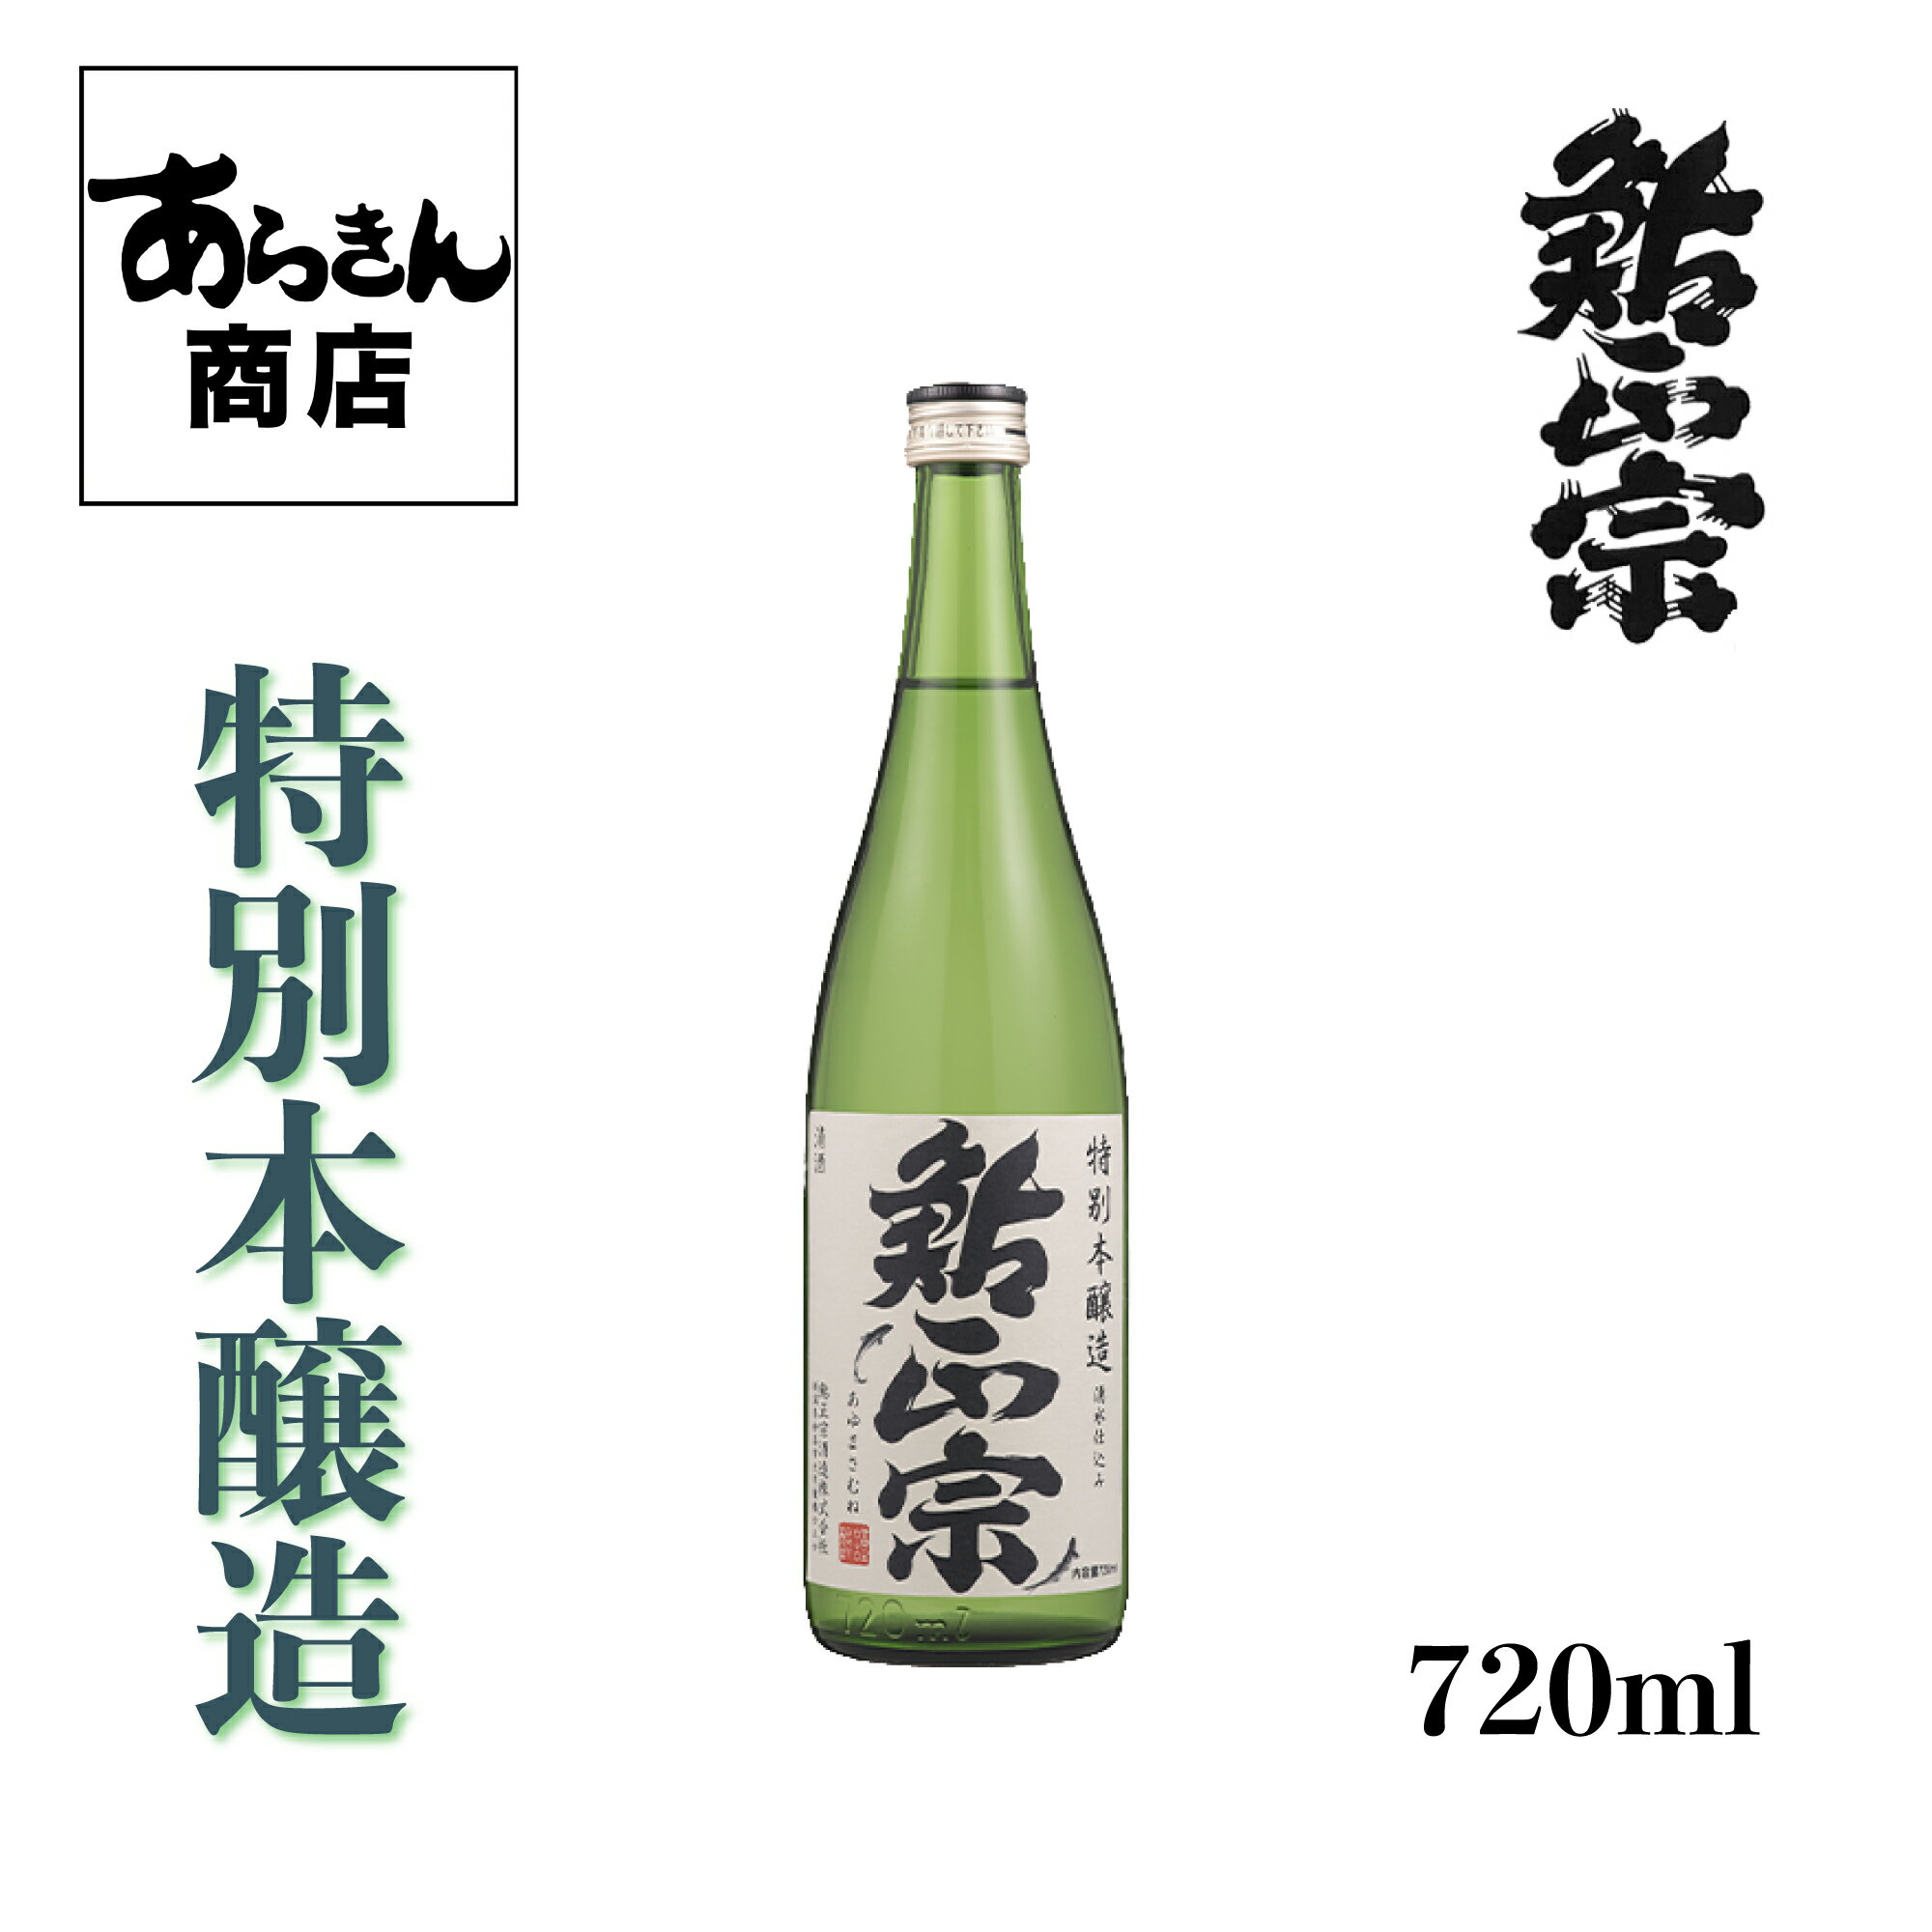 鮎正宗 特別本醸造720ml 日本酒 新潟 